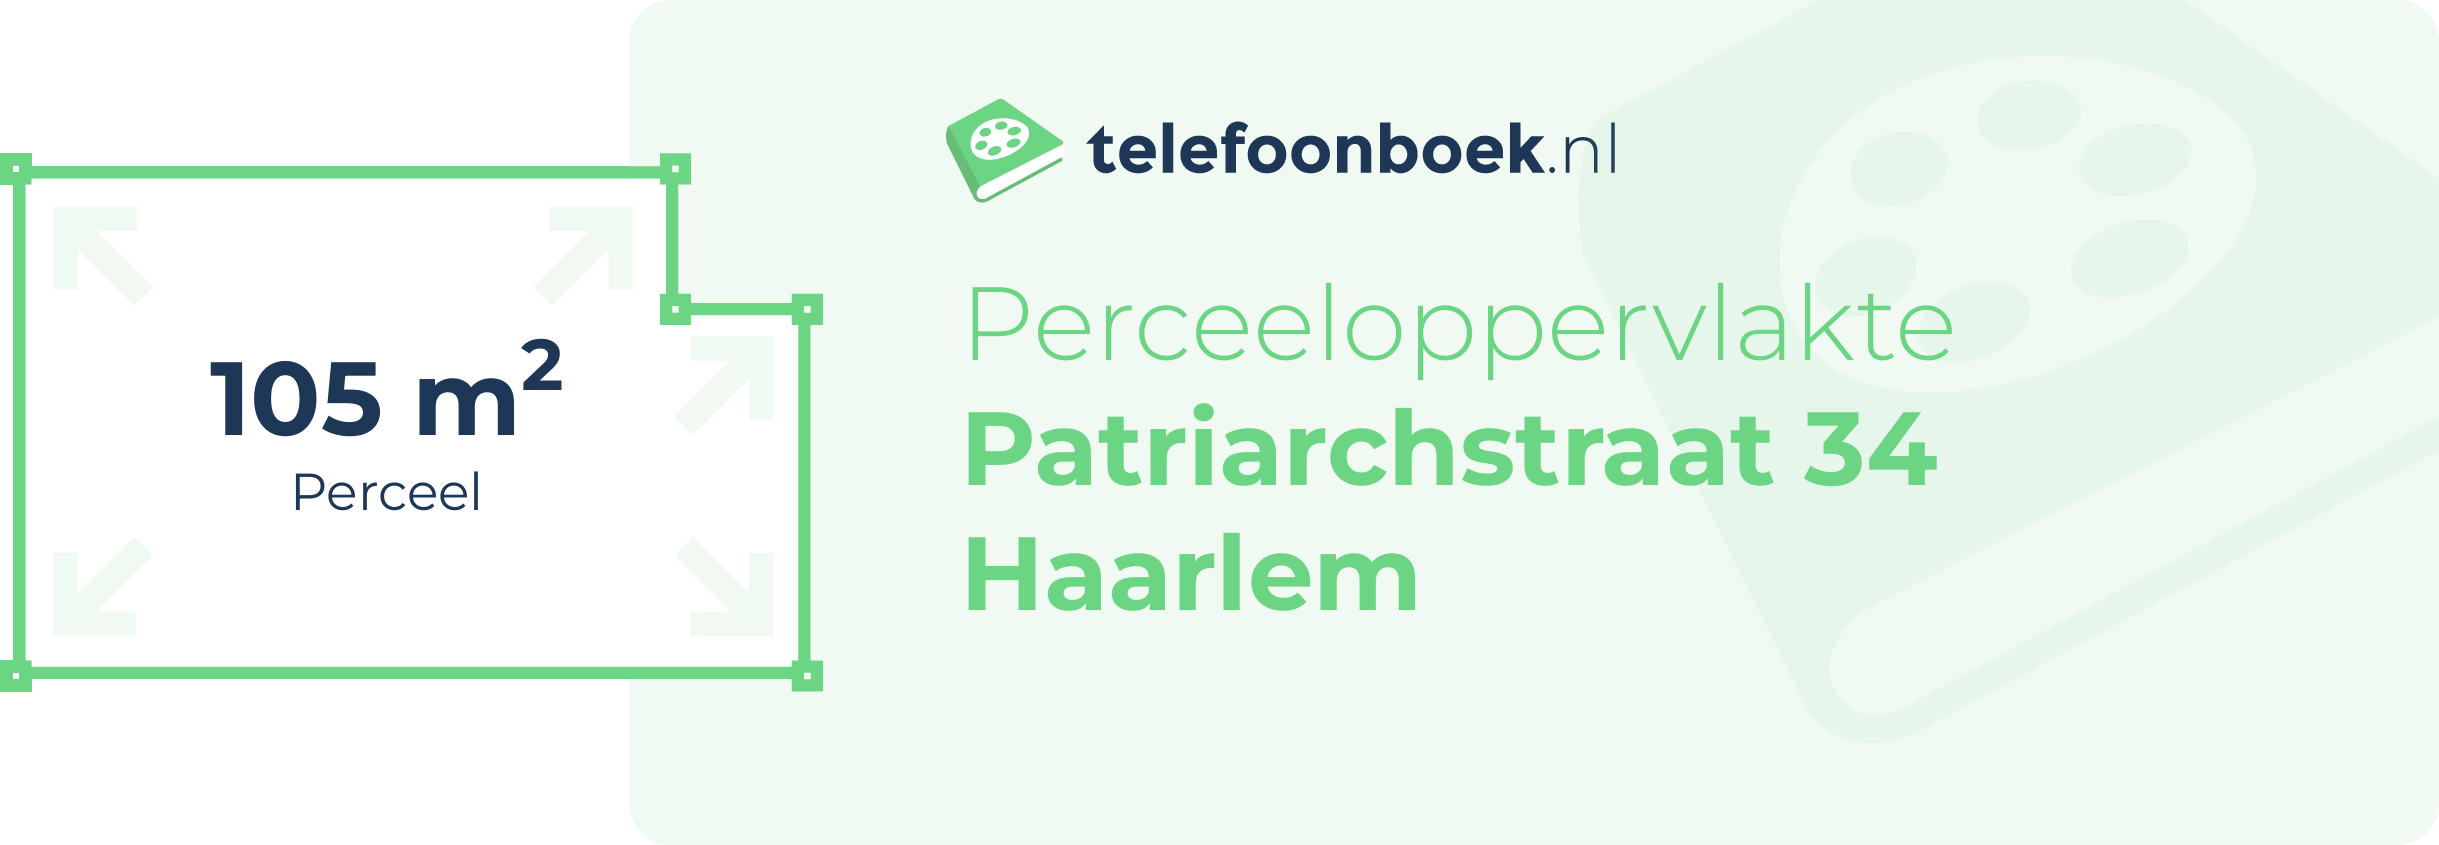 Perceeloppervlakte Patriarchstraat 34 Haarlem